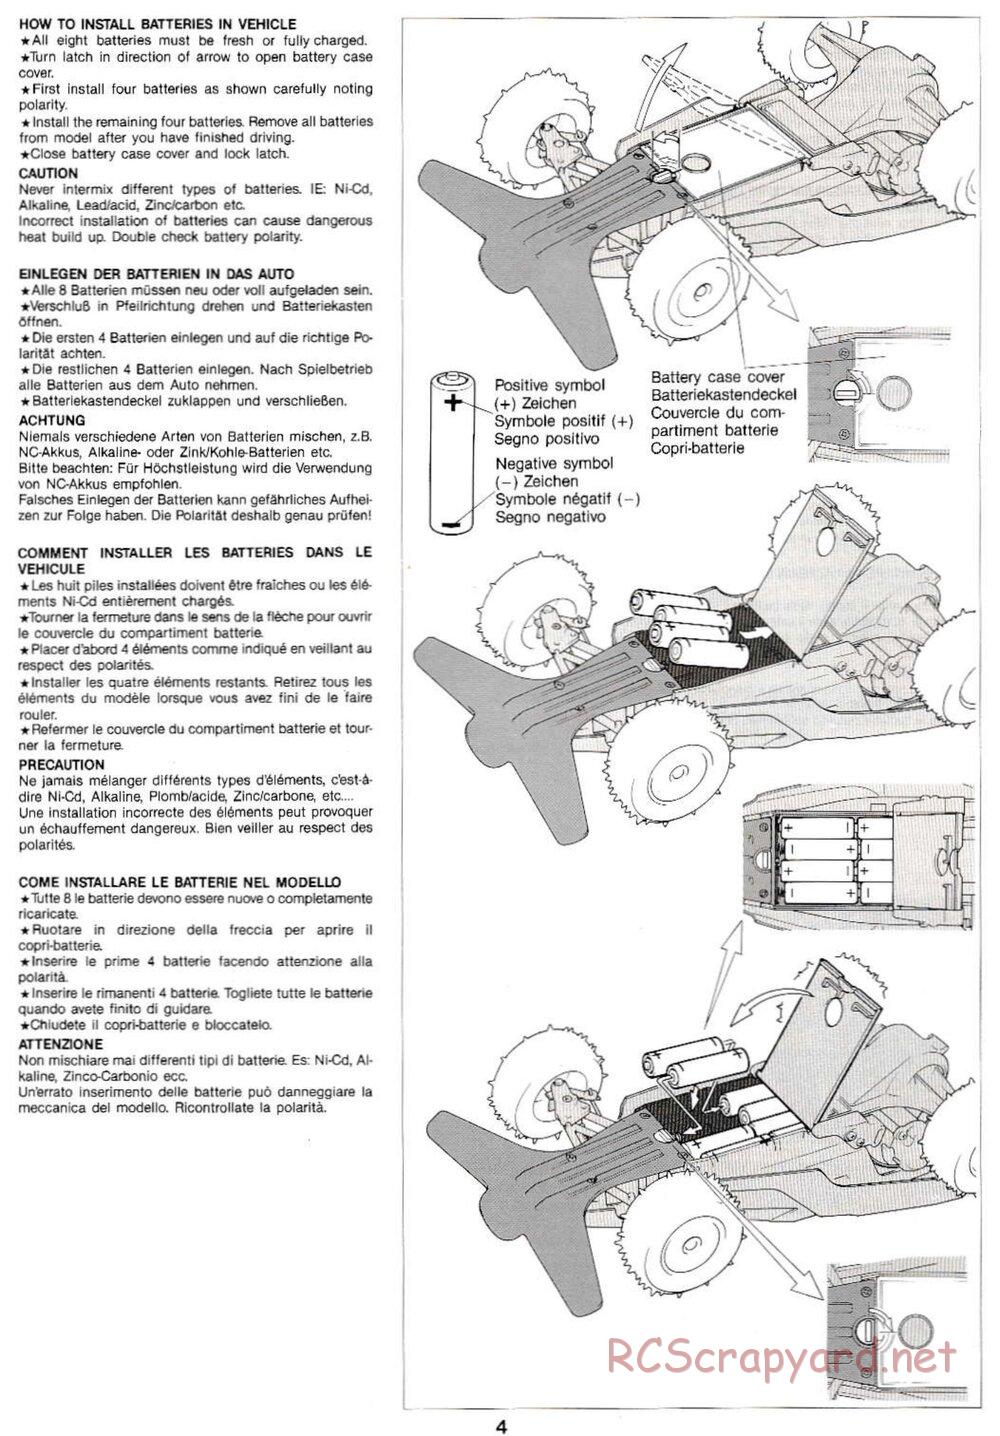 Tamiya - Super Sabre QD Chassis - Manual - Page 4